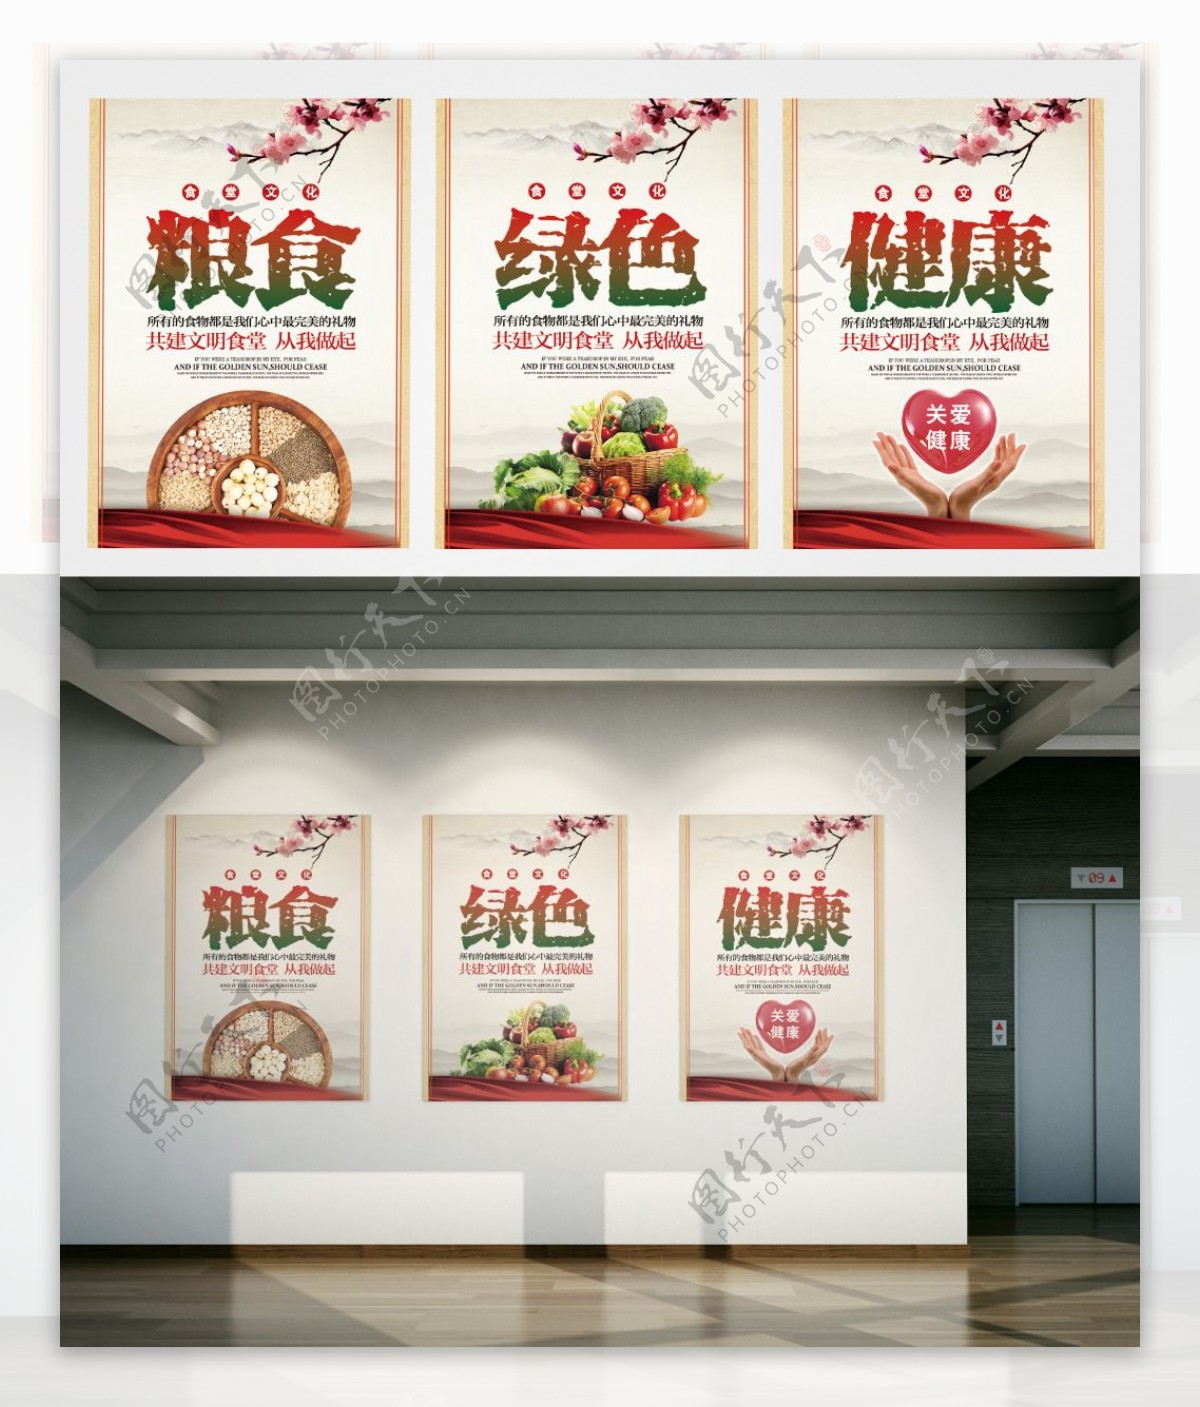 校园食堂中国风公益文化展板